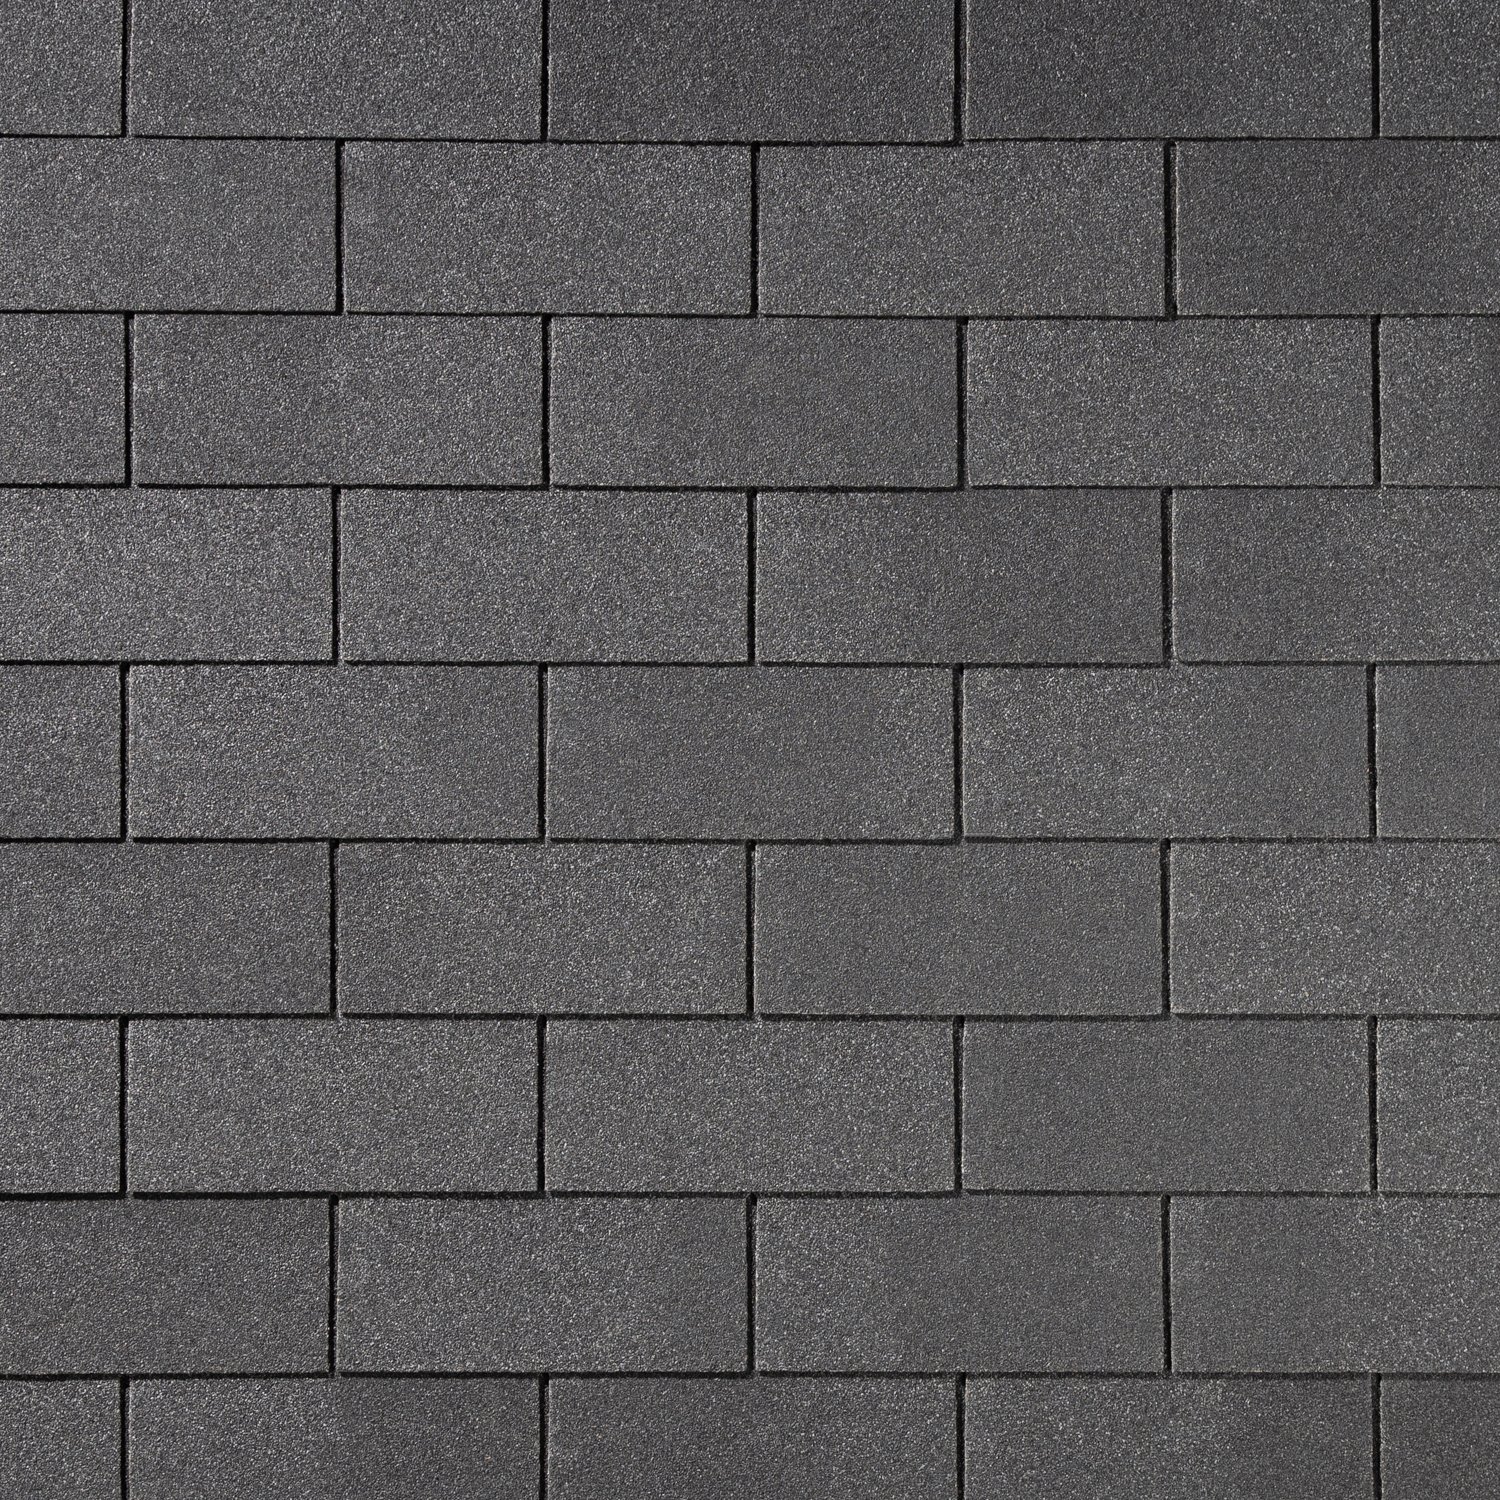 Гибкая черепица Quiet tile Brick серый 3м2, серый